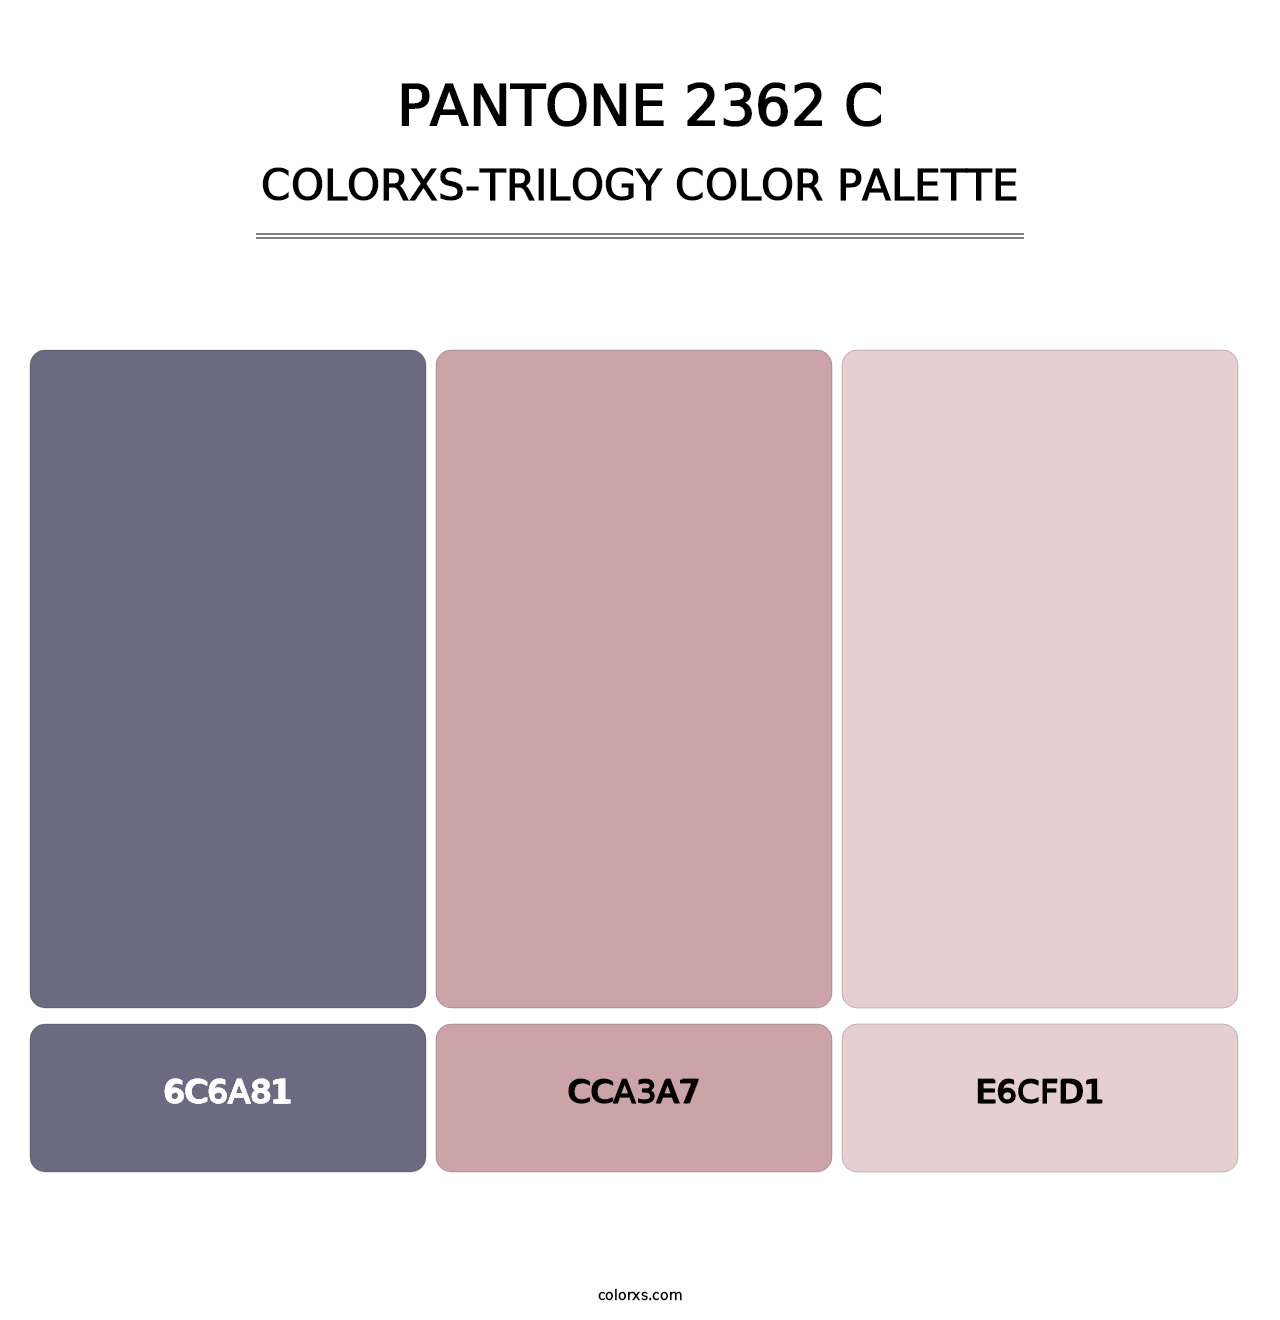 PANTONE 2362 C - Colorxs Trilogy Palette